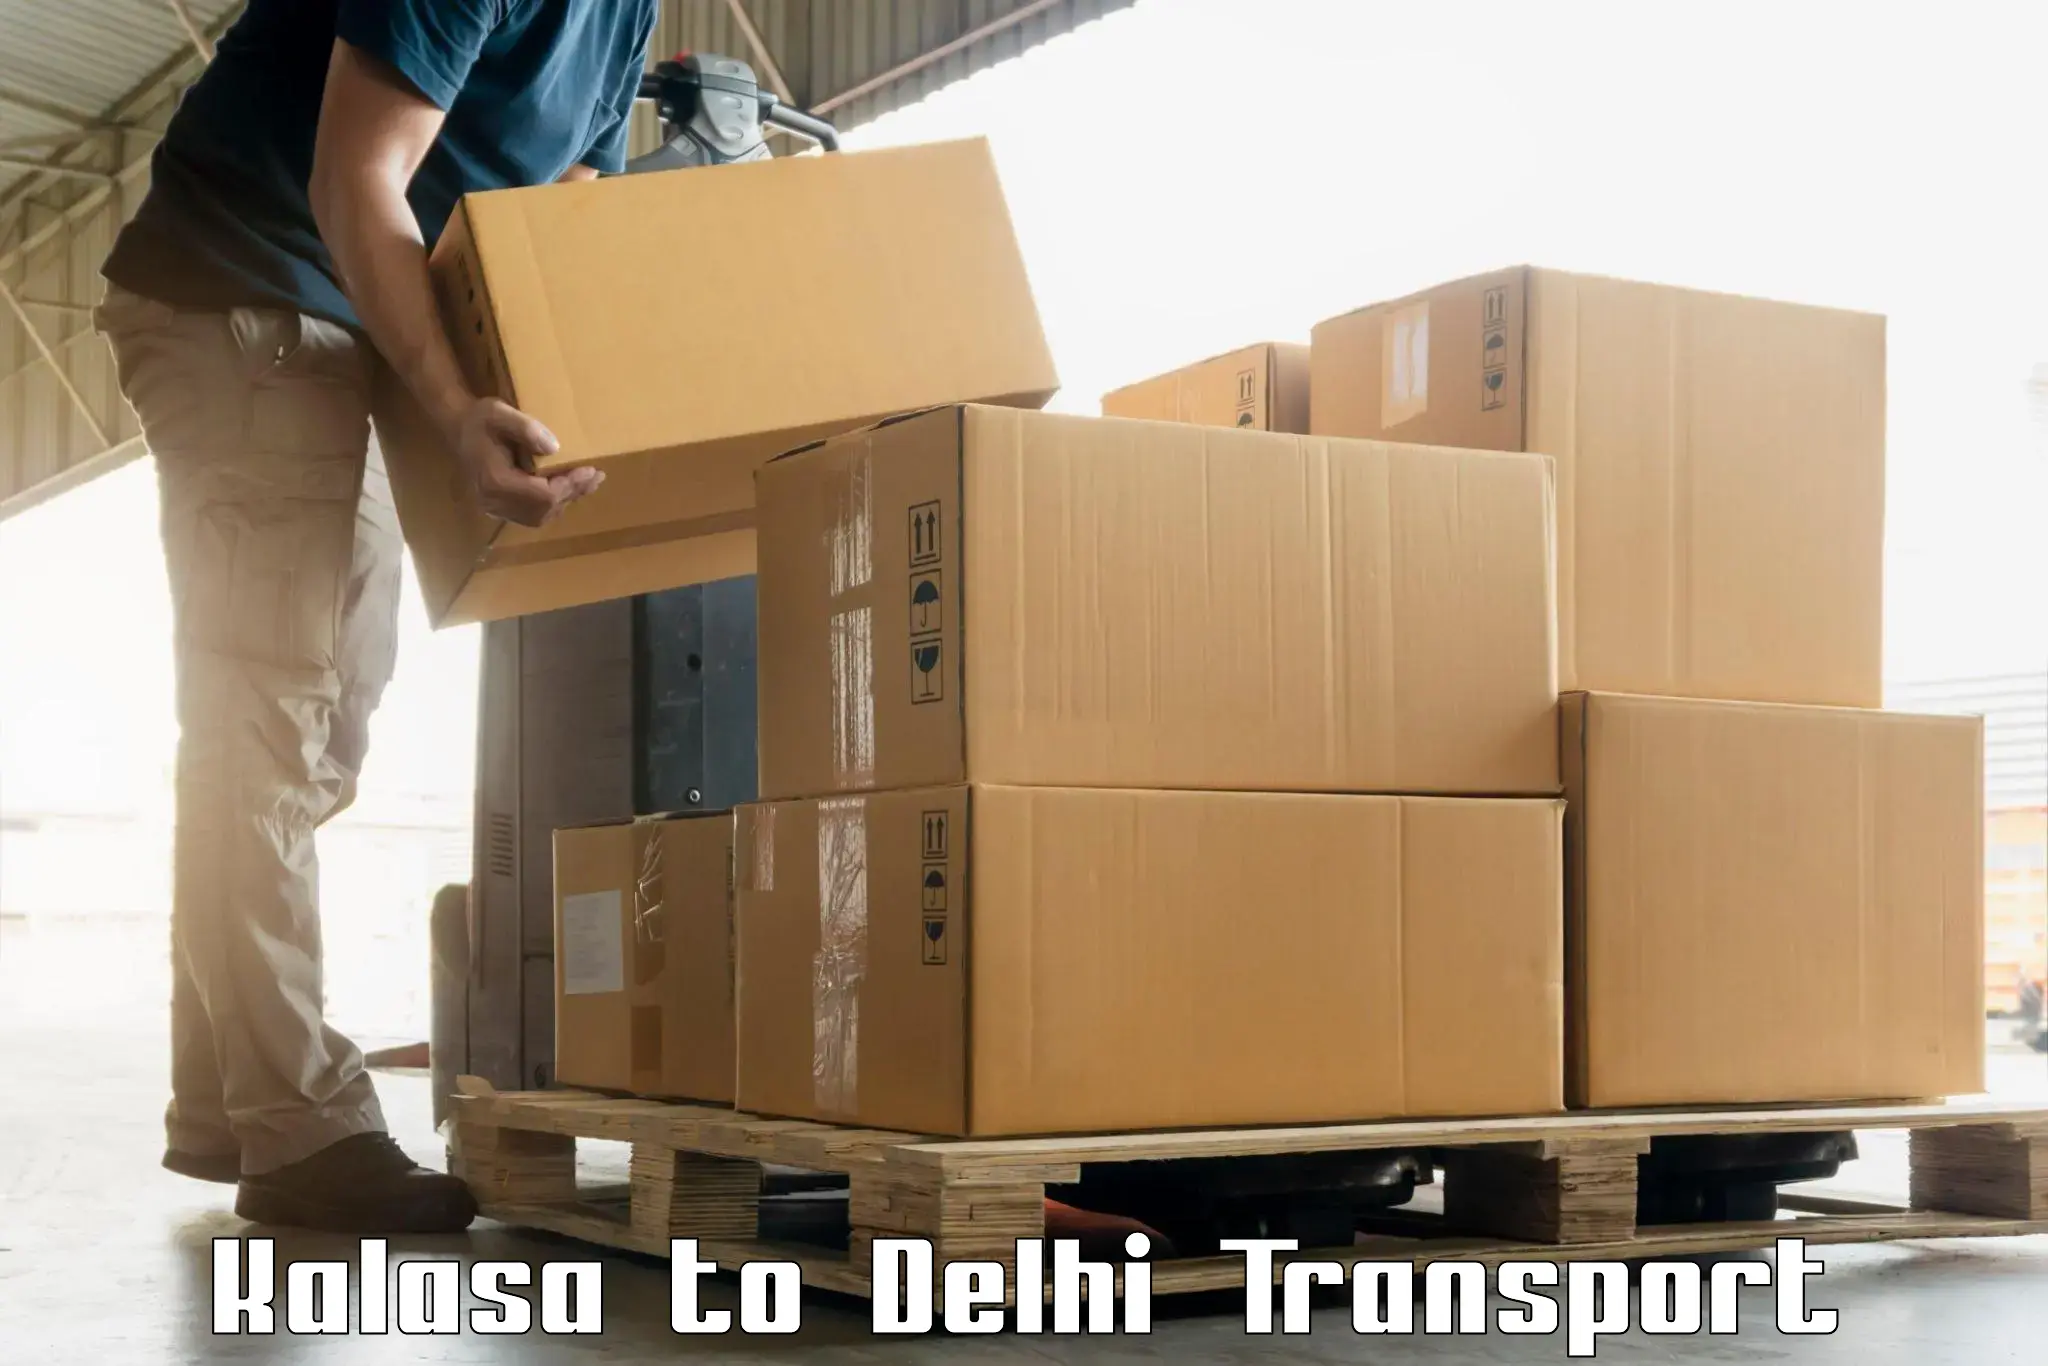 Nearby transport service Kalasa to Delhi